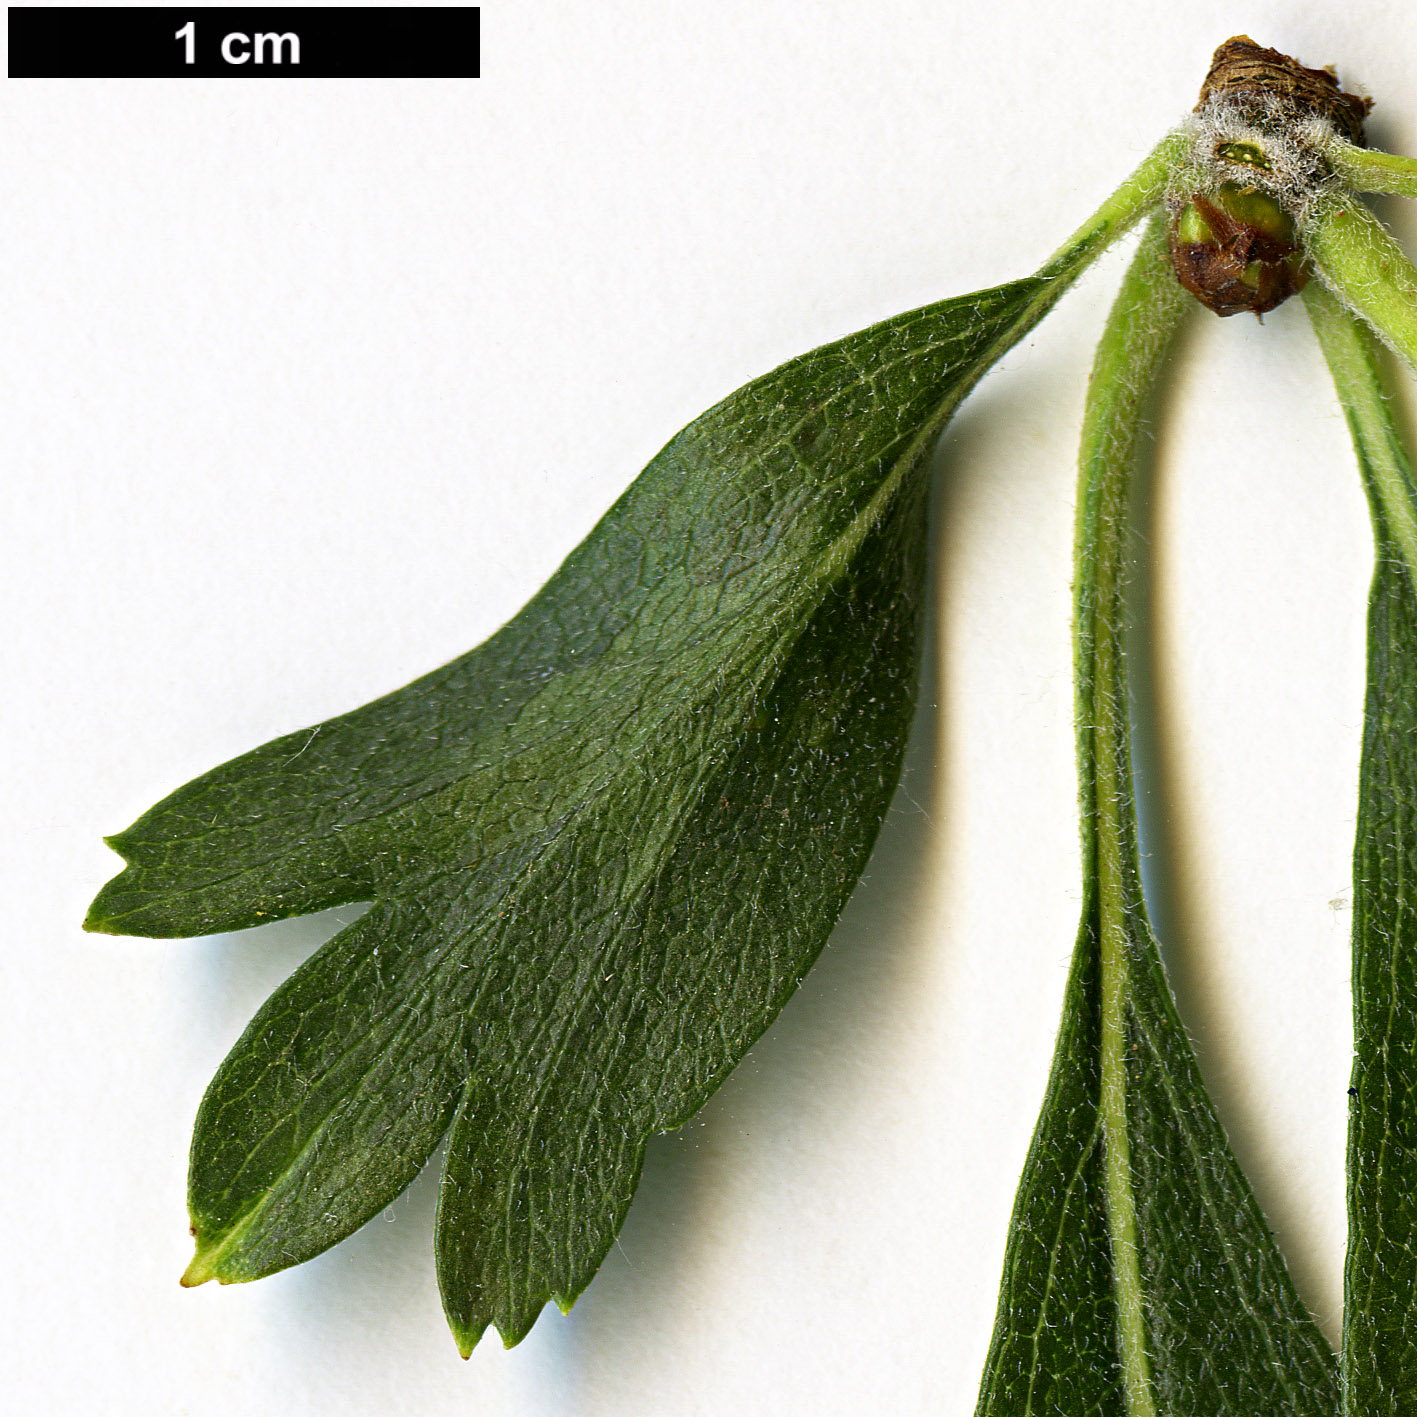 High resolution image: Family: Rosaceae - Genus: Crataegus - Taxon: azarolus - SpeciesSub: 'Geraki'